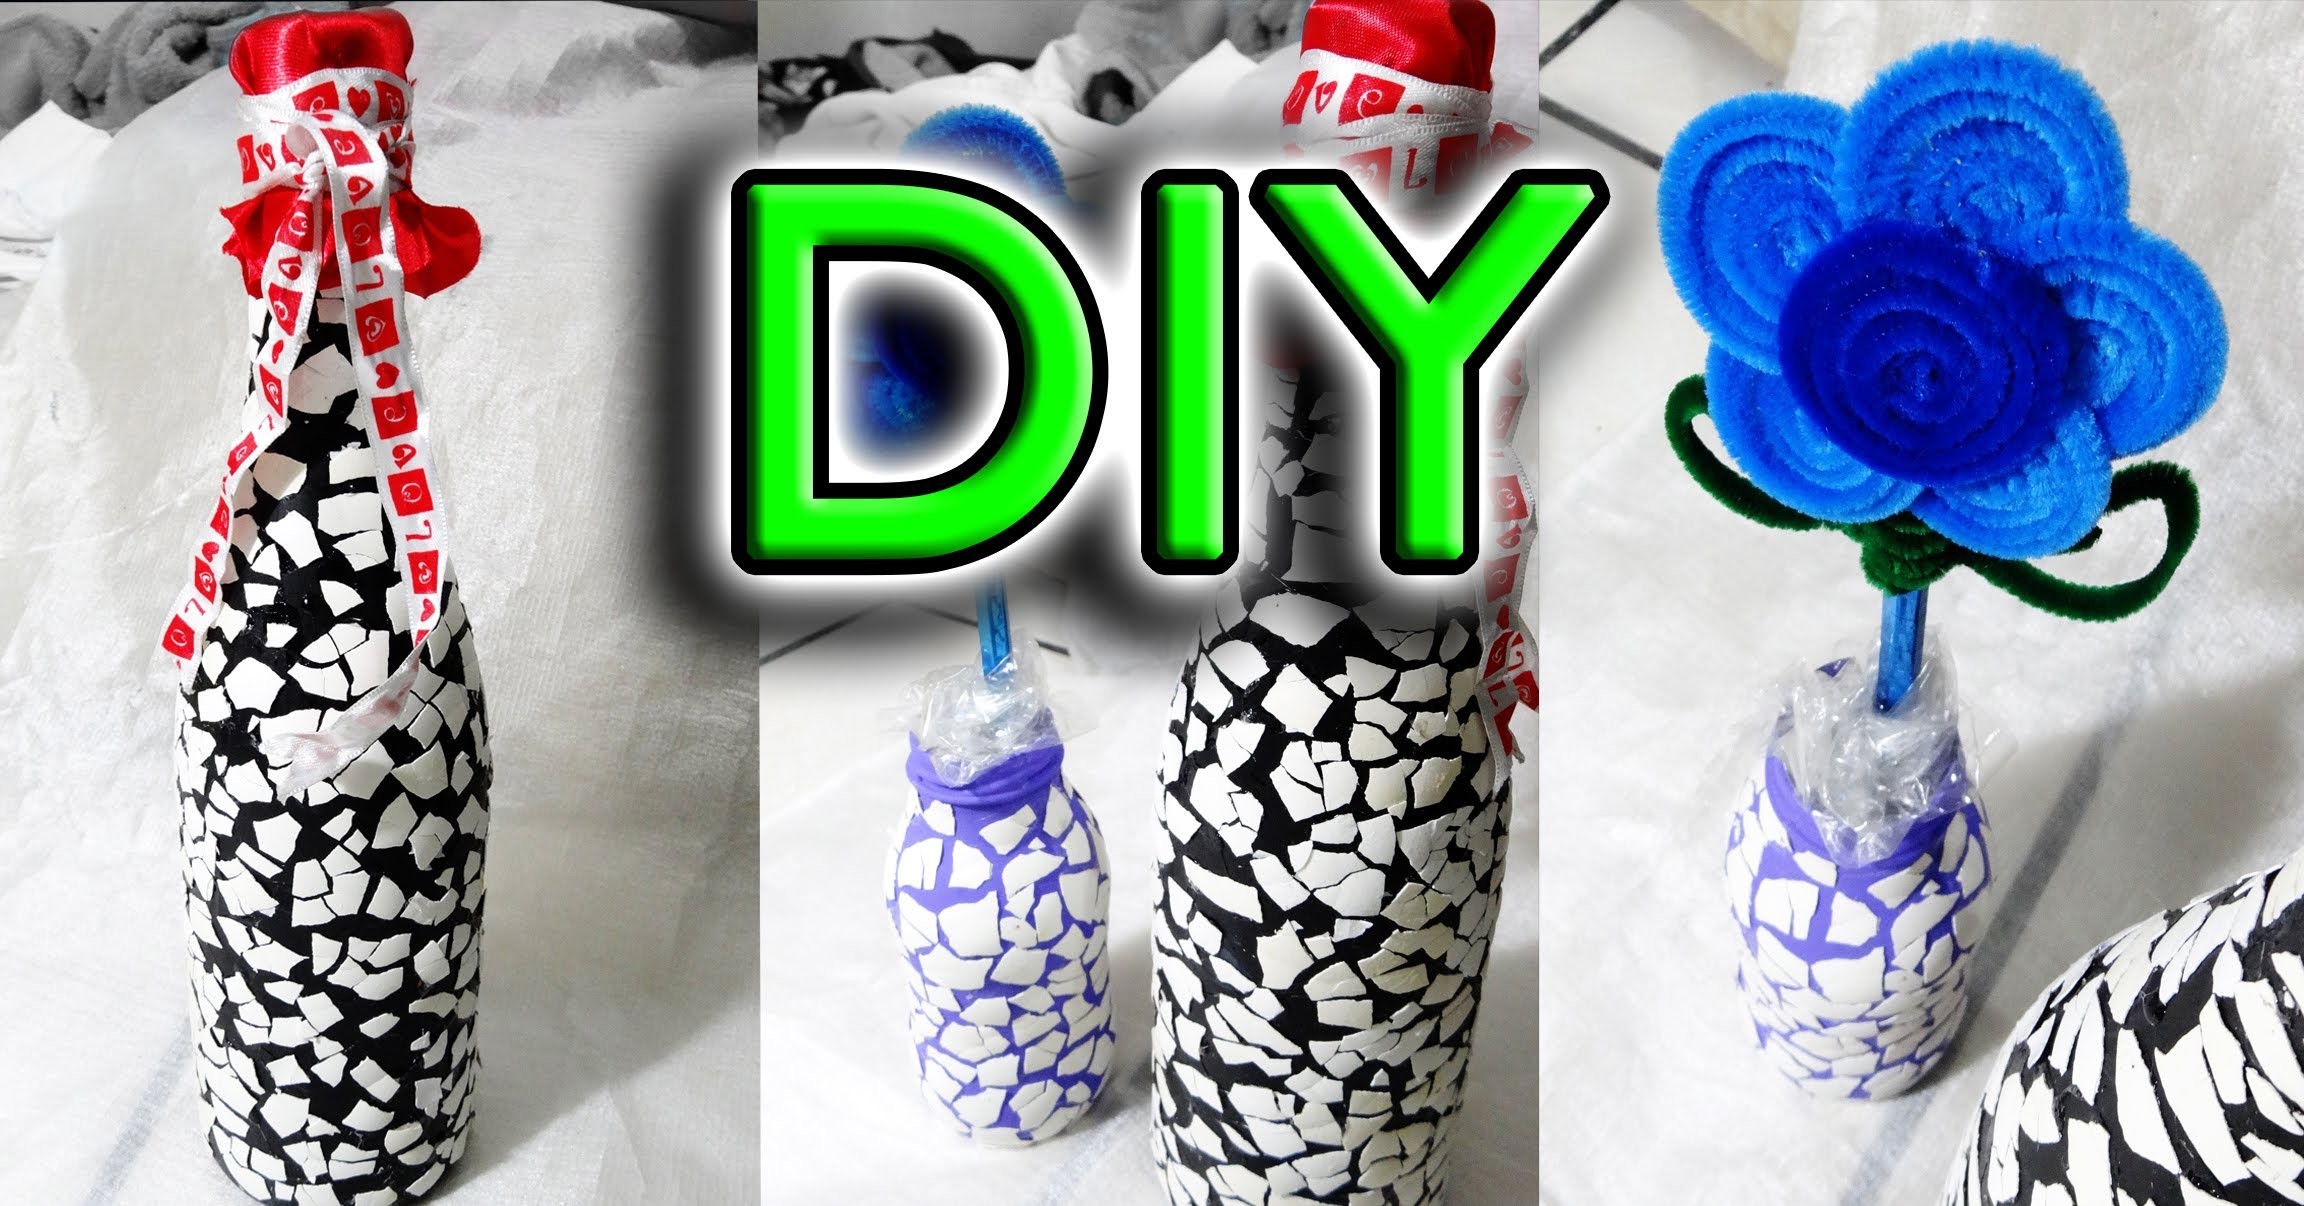 DIY→Decora botellas efecto craquelado con cascarón de huevo